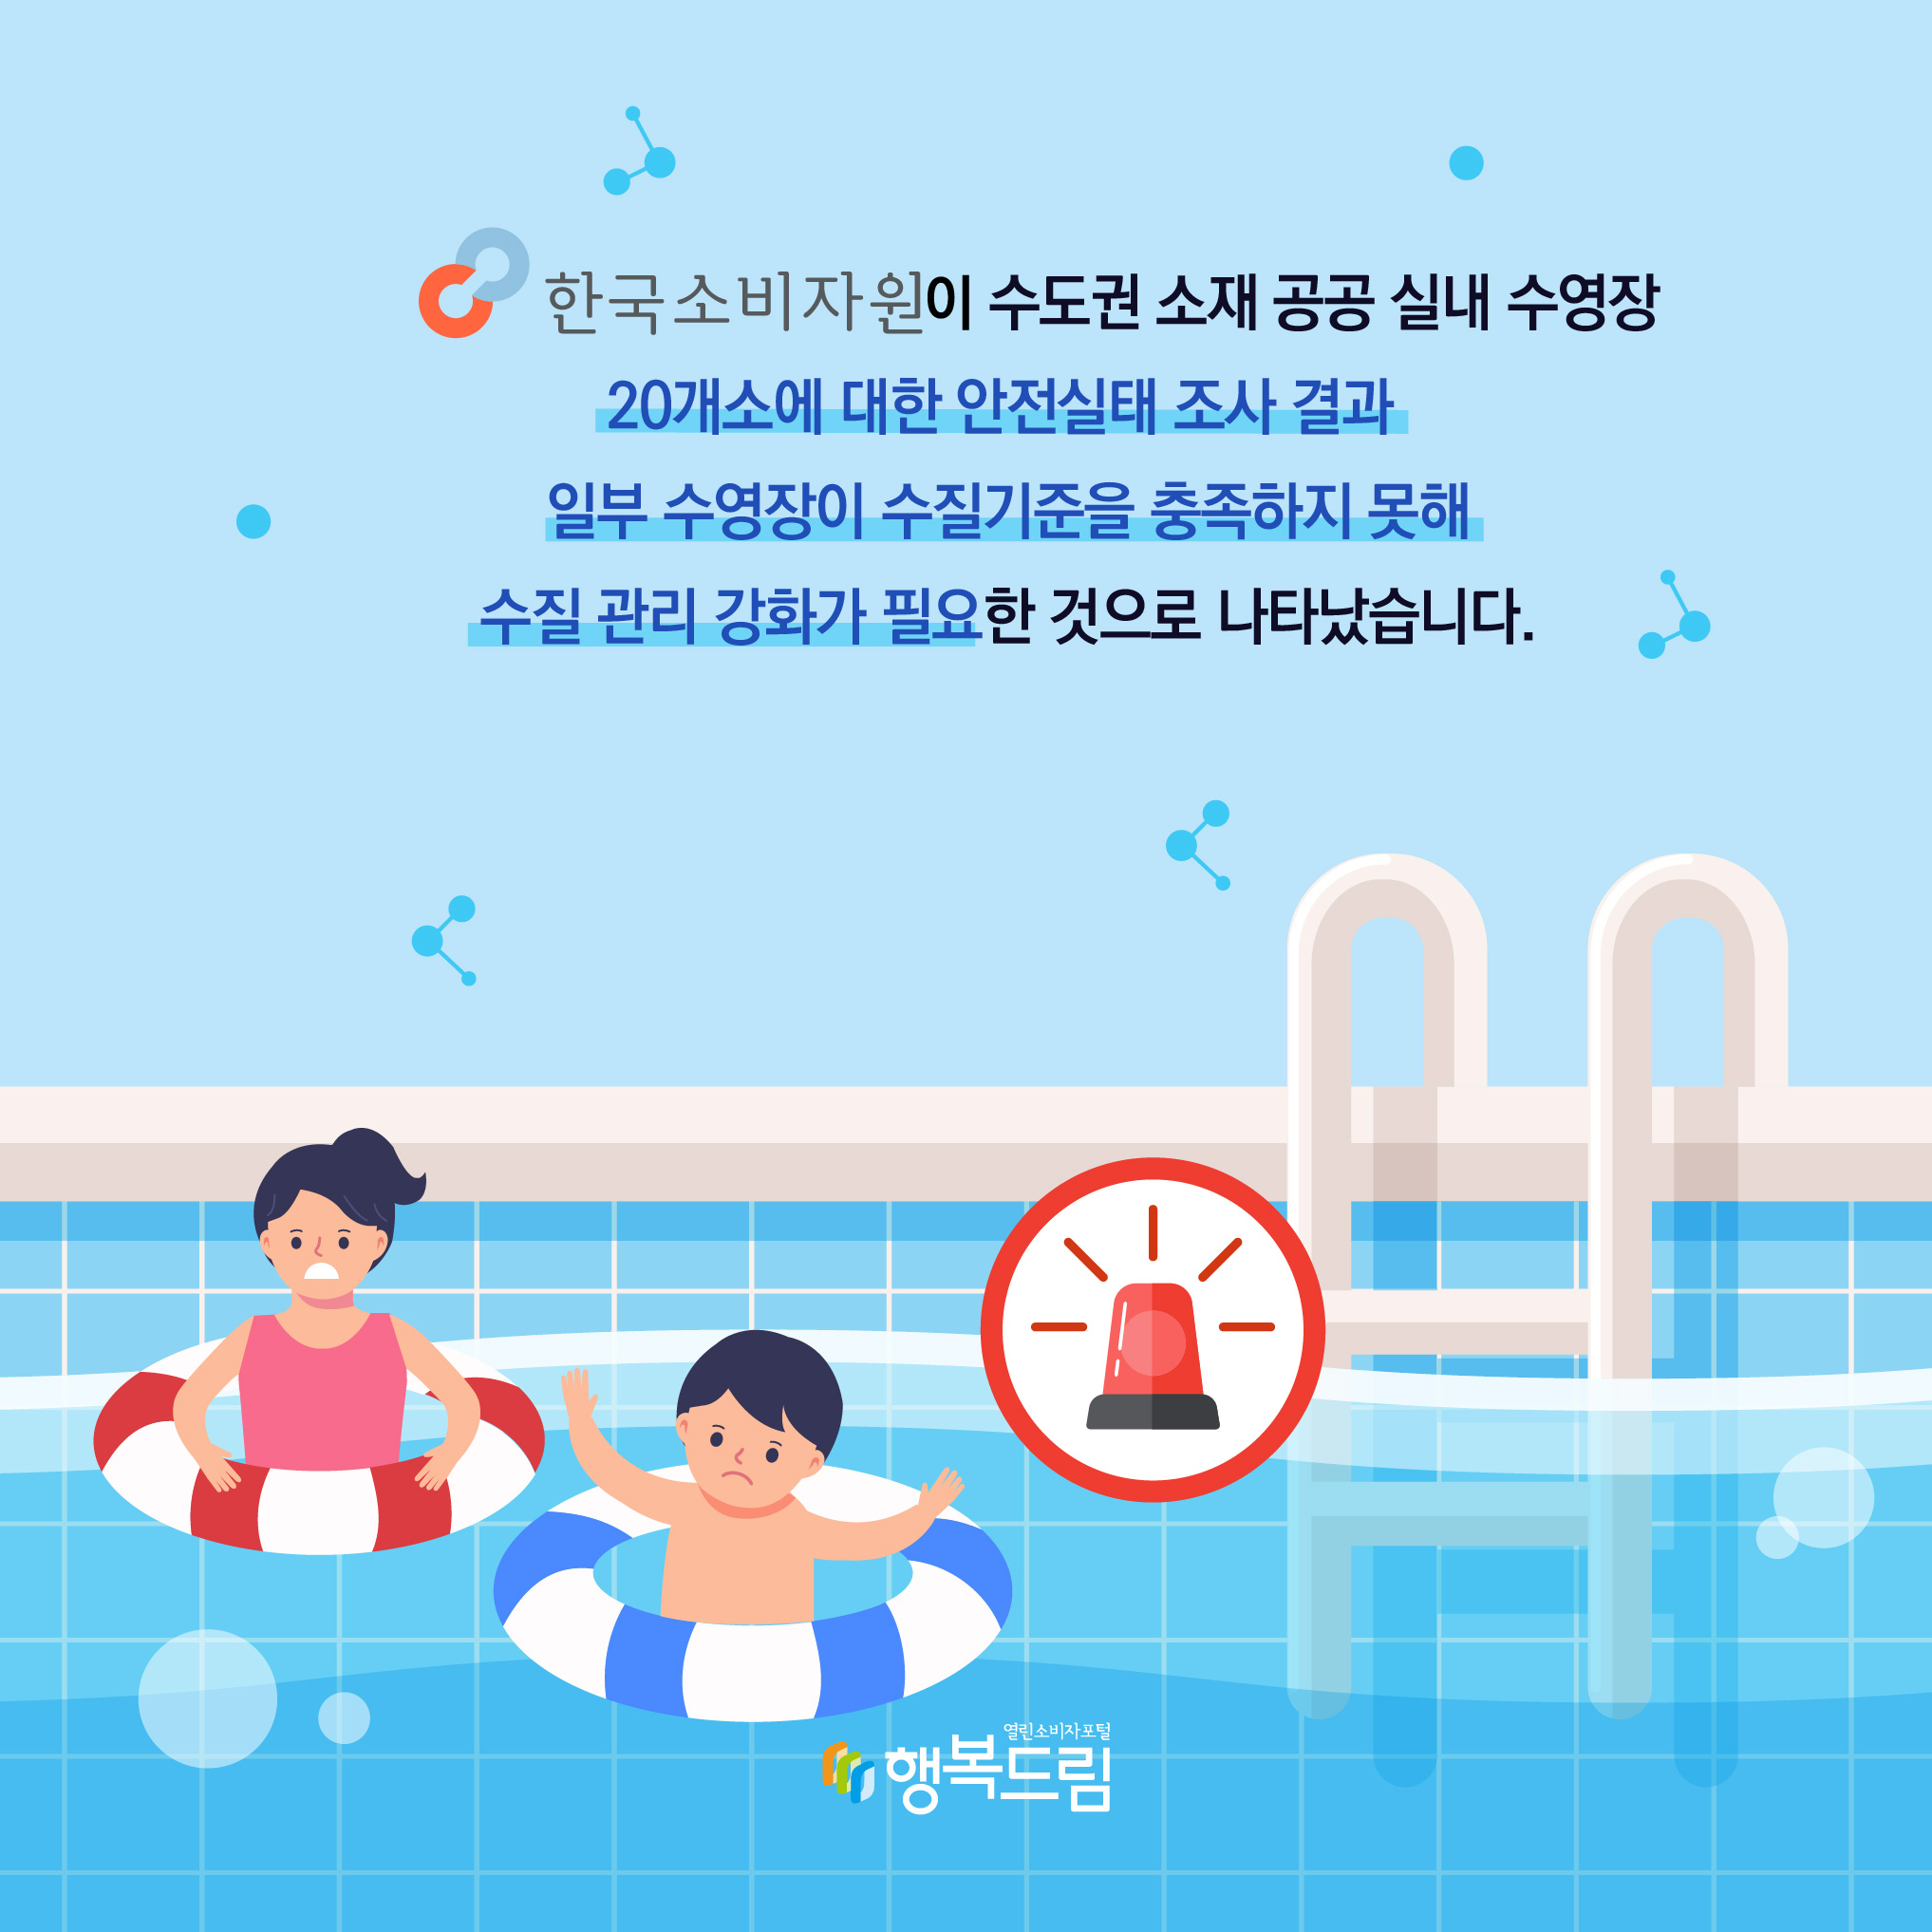 한국소비자원이 수도권 소재 공공 실내 수영장 20개소에 대한 안전실태 조사 결과 일부 수영장이 수질 기준을 충족하지 못해 수질 관리 강화가 필요한 것으로 나타났습니다. 